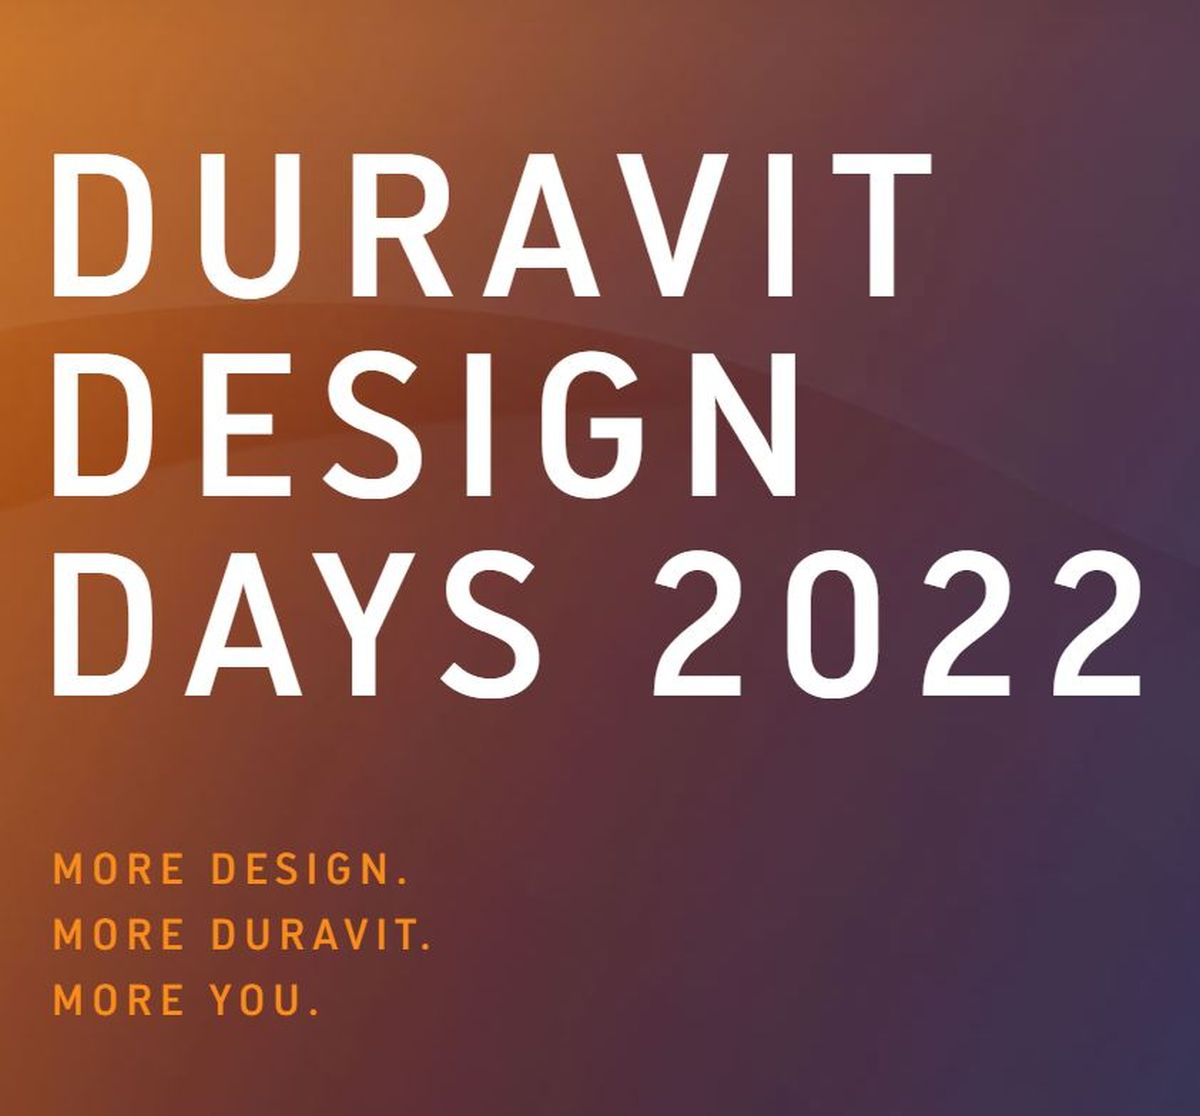 duravit, duravit design days 2022